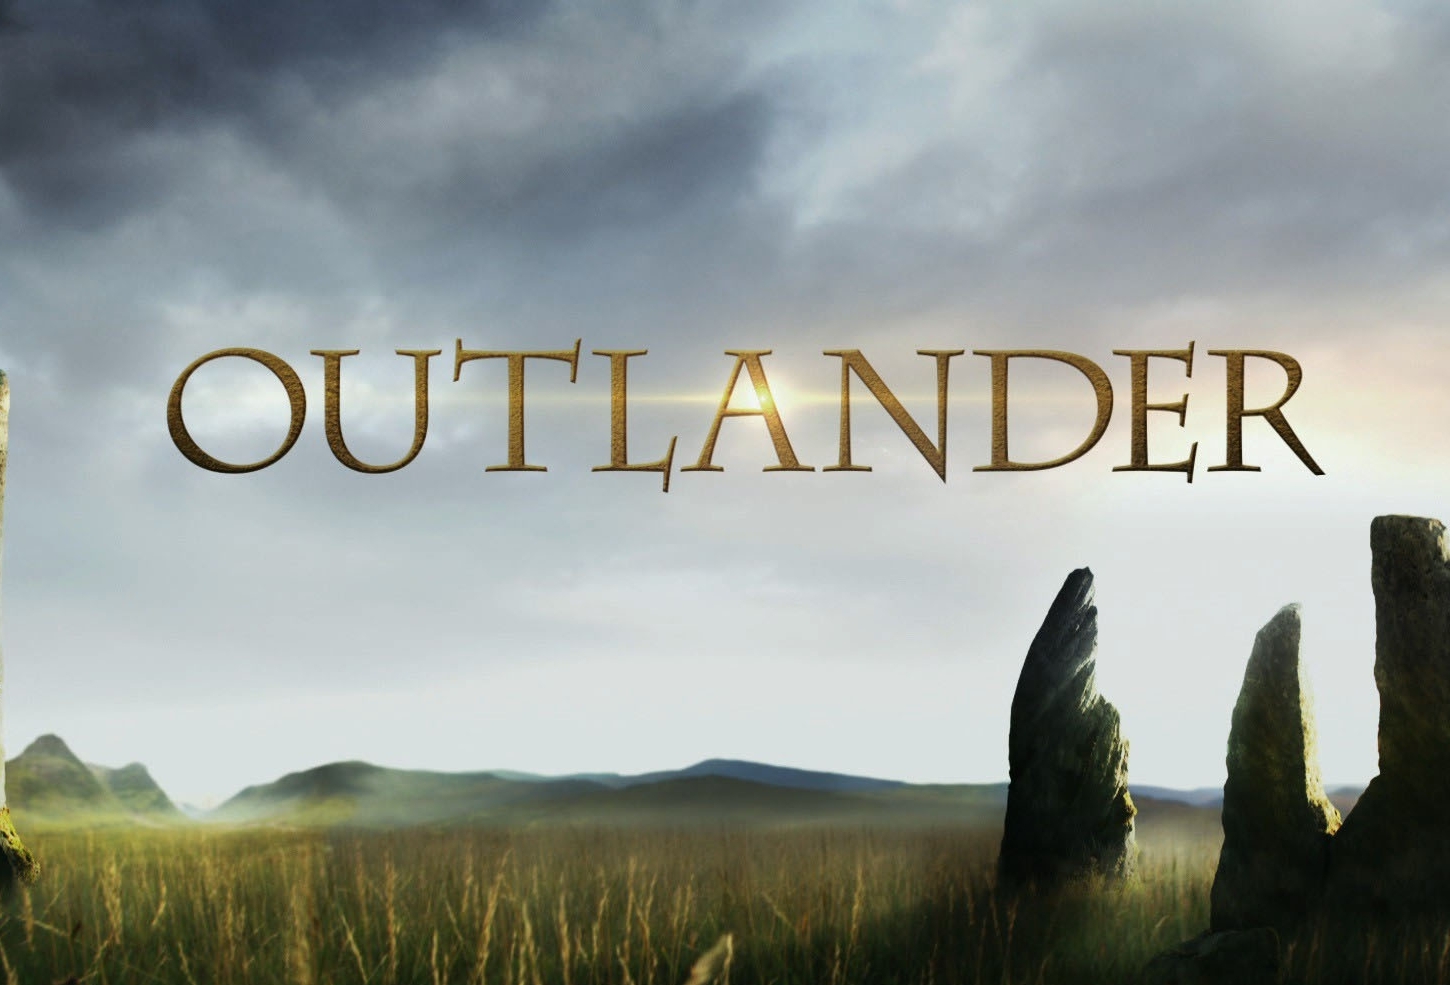 22-229613_outlander-wallpaper-outlander-series FOR WEB.jpg